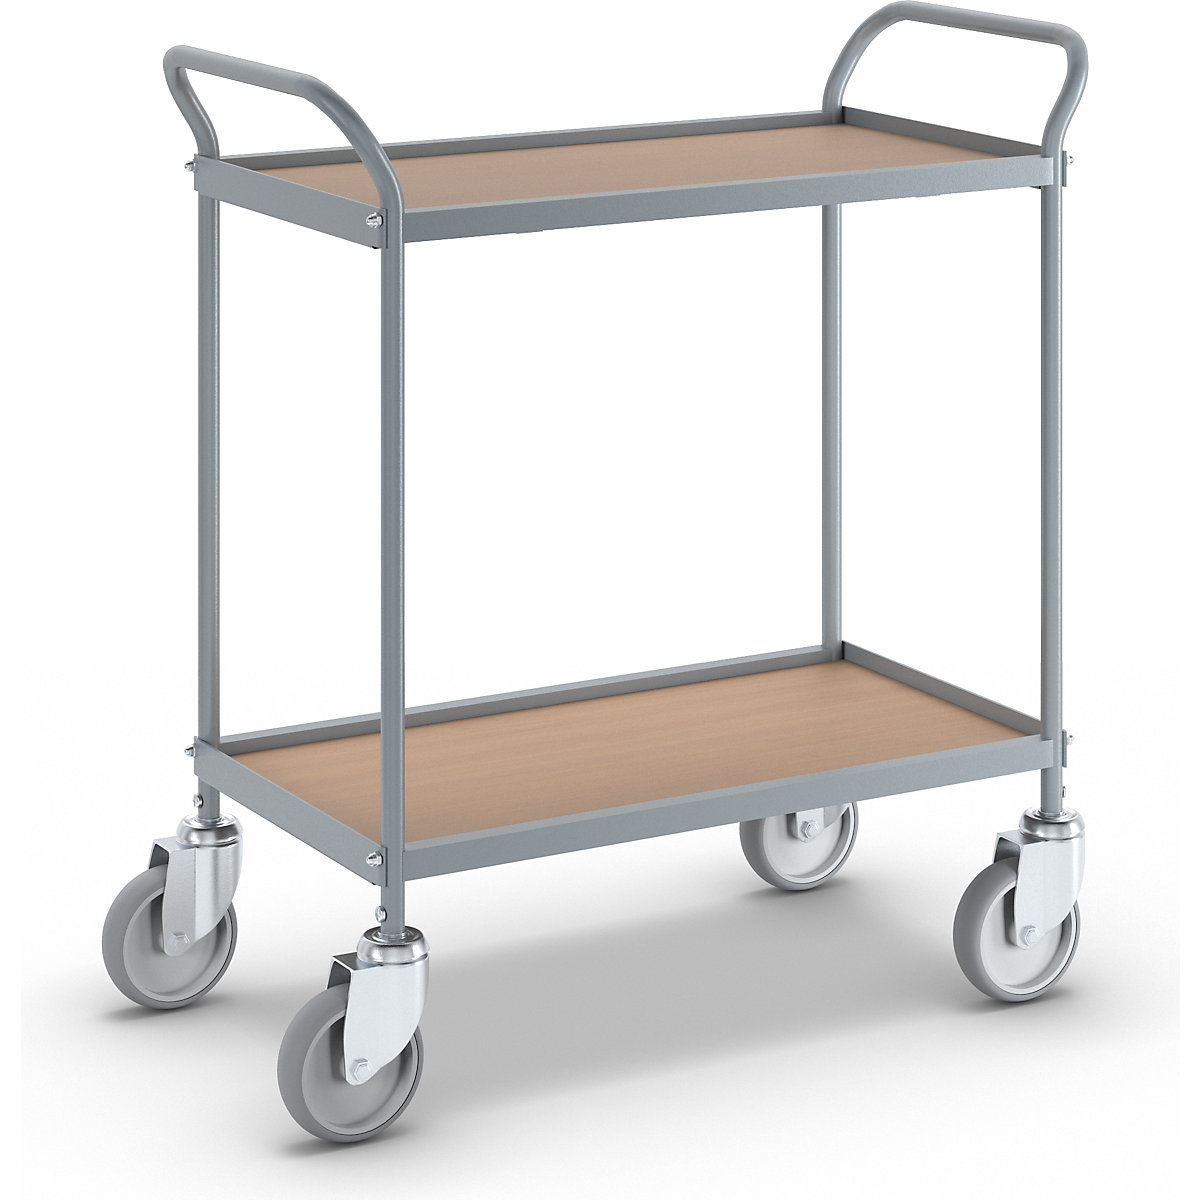 Serving trolley – eurokraft pro, shelf height 530 mm, 2 shelves, with 4 swivel castors, wheel Ø 125 mm-9